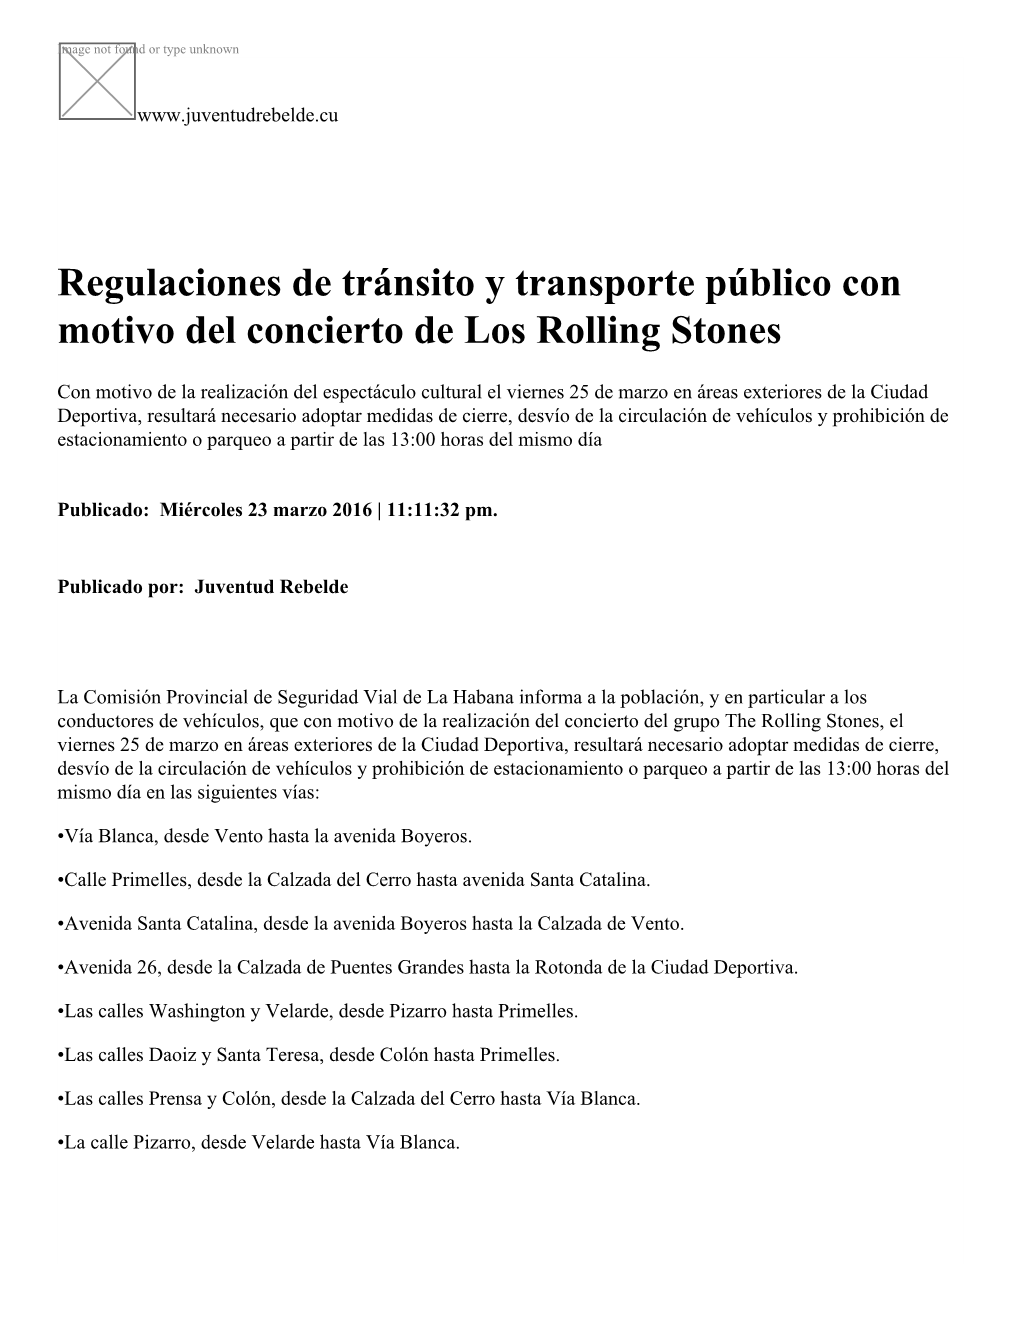 Regulaciones De Tránsito Y Transporte Público Con Motivo Del Concierto De Los Rolling Stones